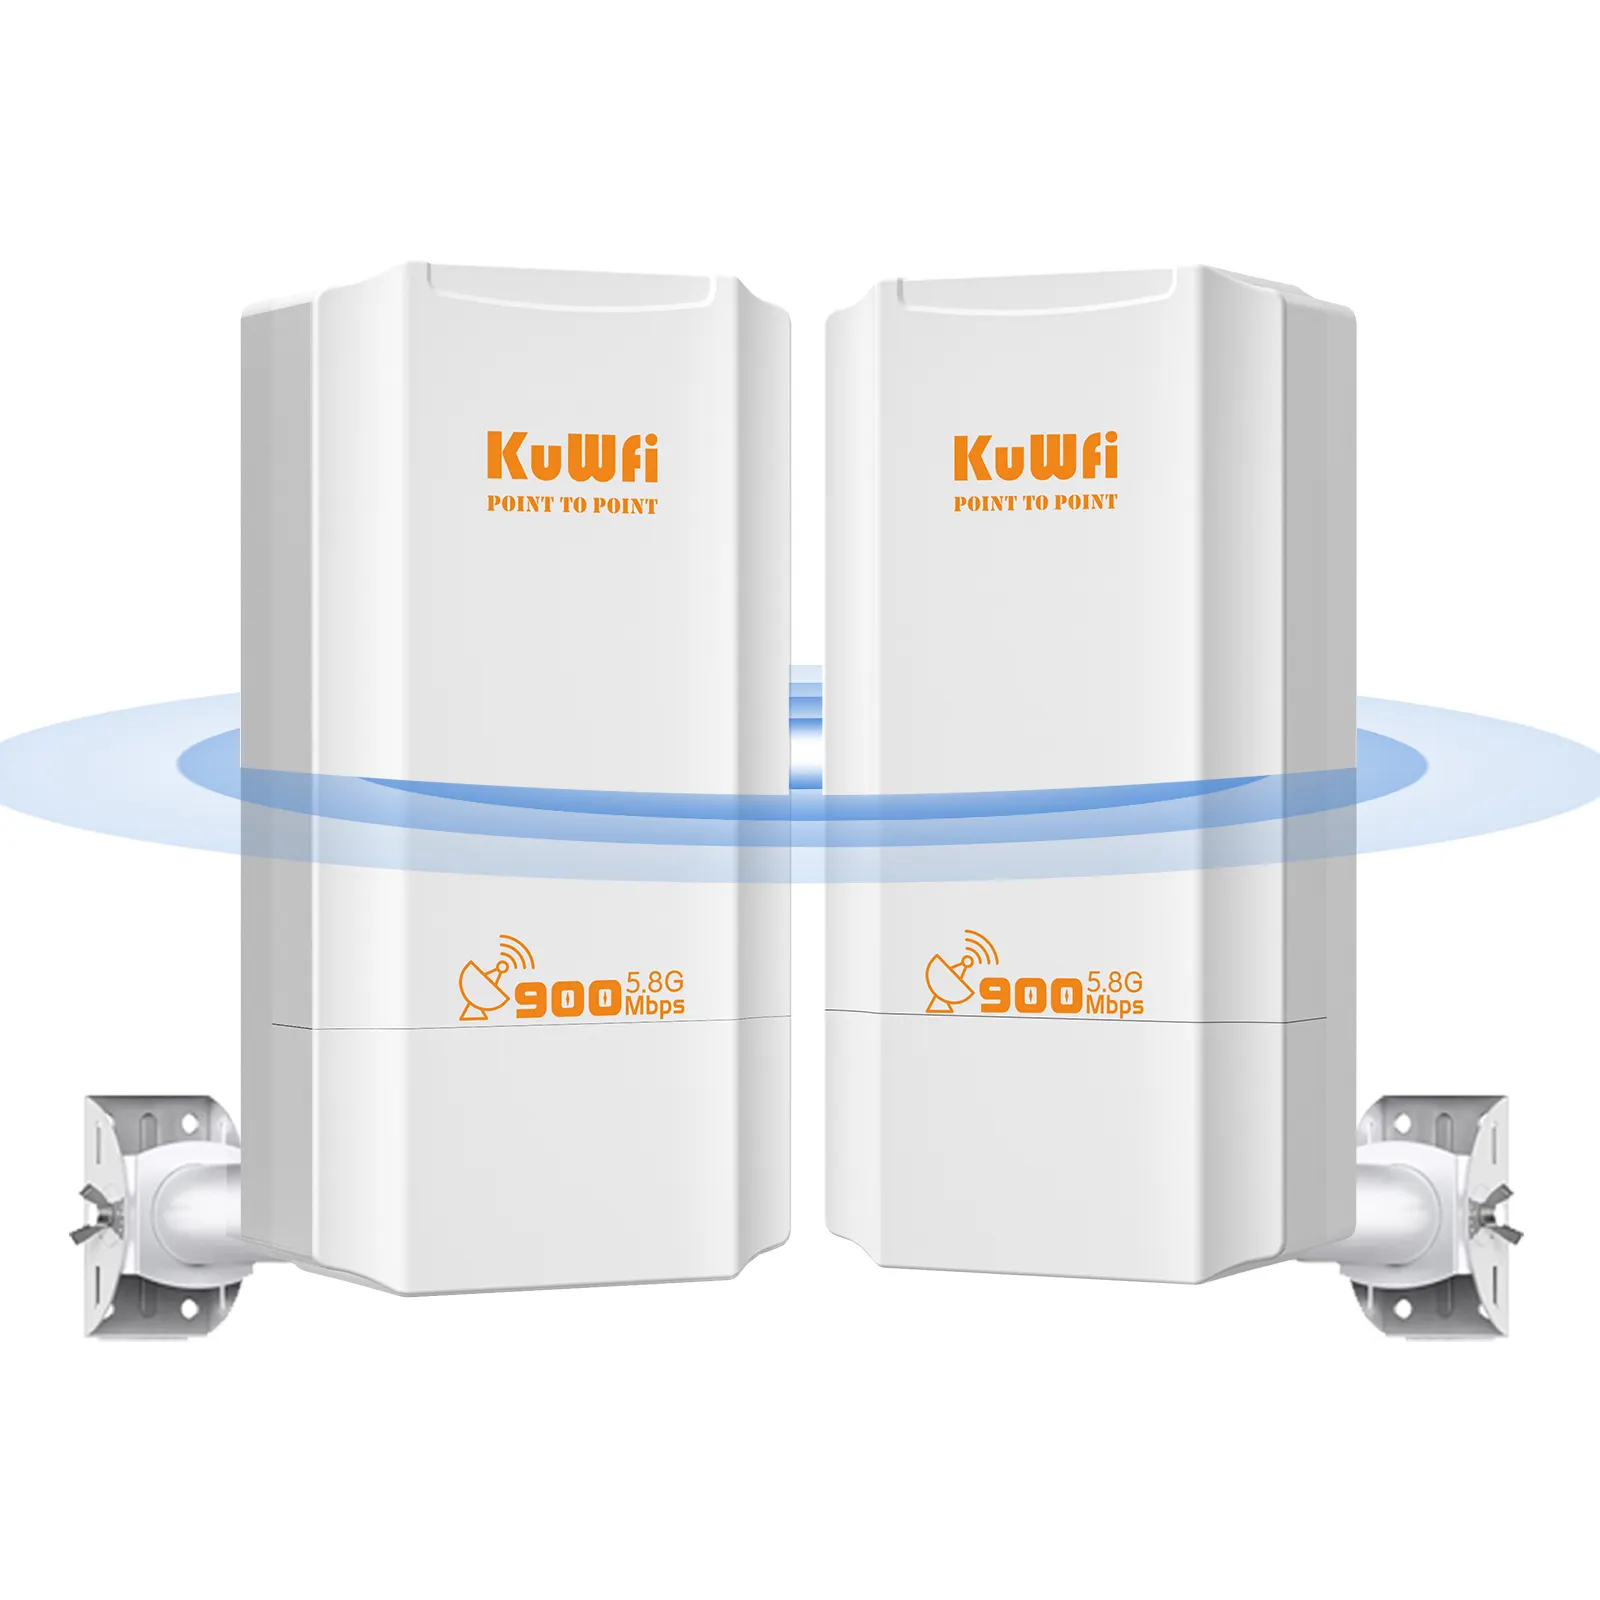 Тип маршрутизатора KuWFi CPE130 версии 5,8G для бесшовного подключения с функциями брандмауэра VoIP QOS для наружного беспроводного моста 2 км